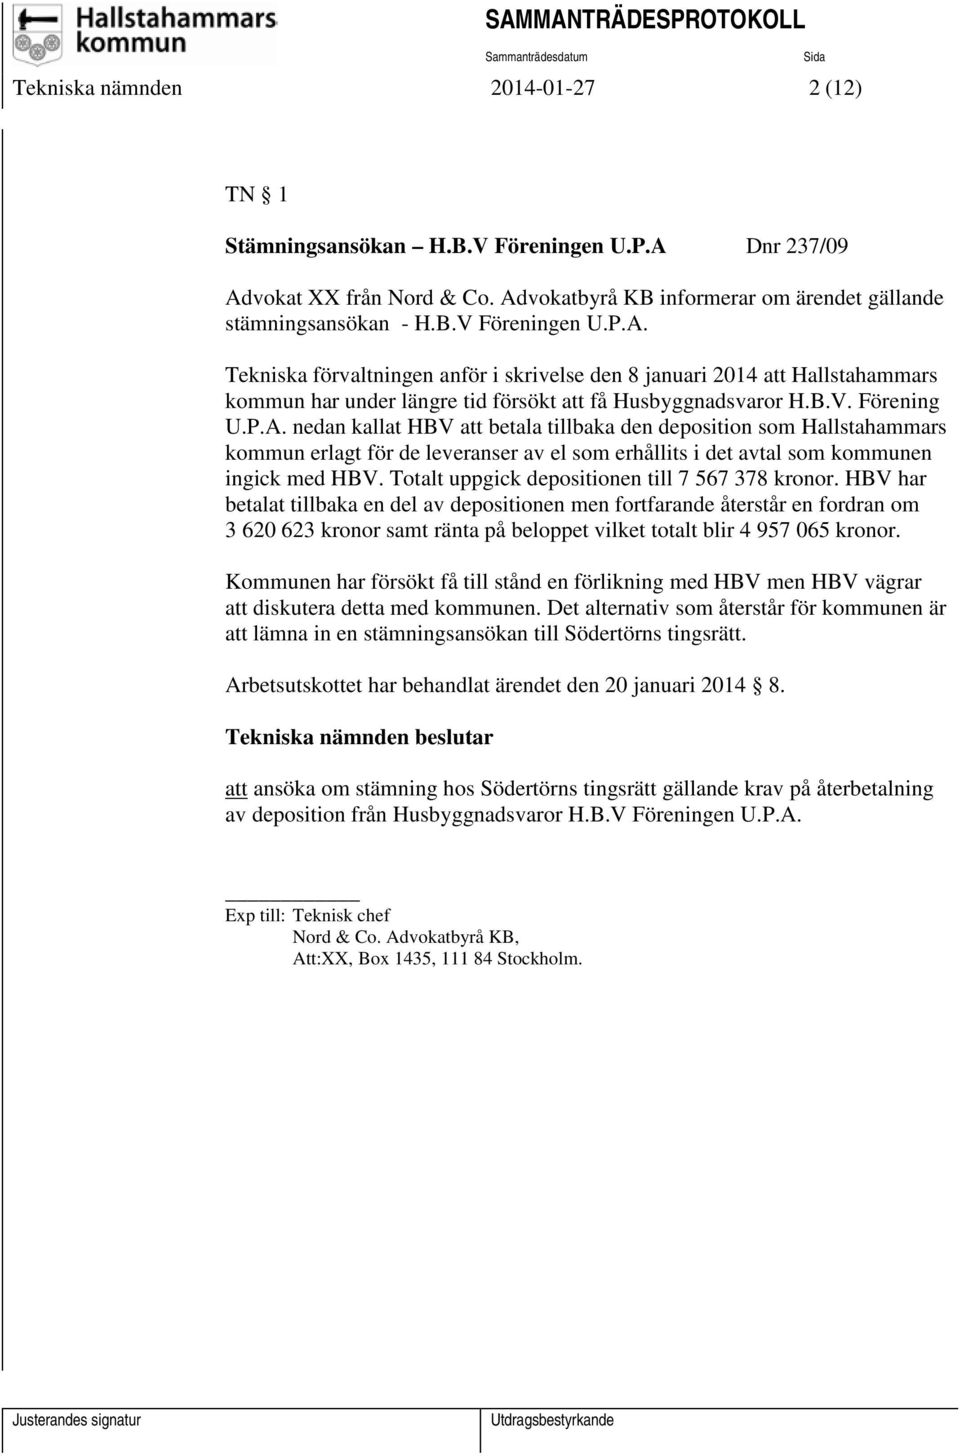 B.V. Förening U.P.A. nedan kallat HBV att betala tillbaka den deposition som Hallstahammars kommun erlagt för de leveranser av el som erhållits i det avtal som kommunen ingick med HBV.